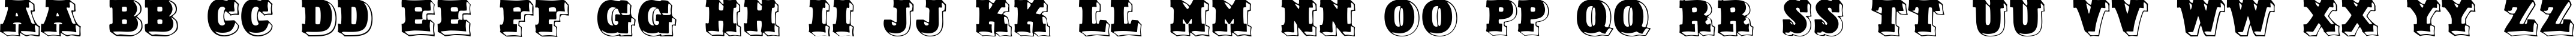 Пример написания английского алфавита шрифтом North Face